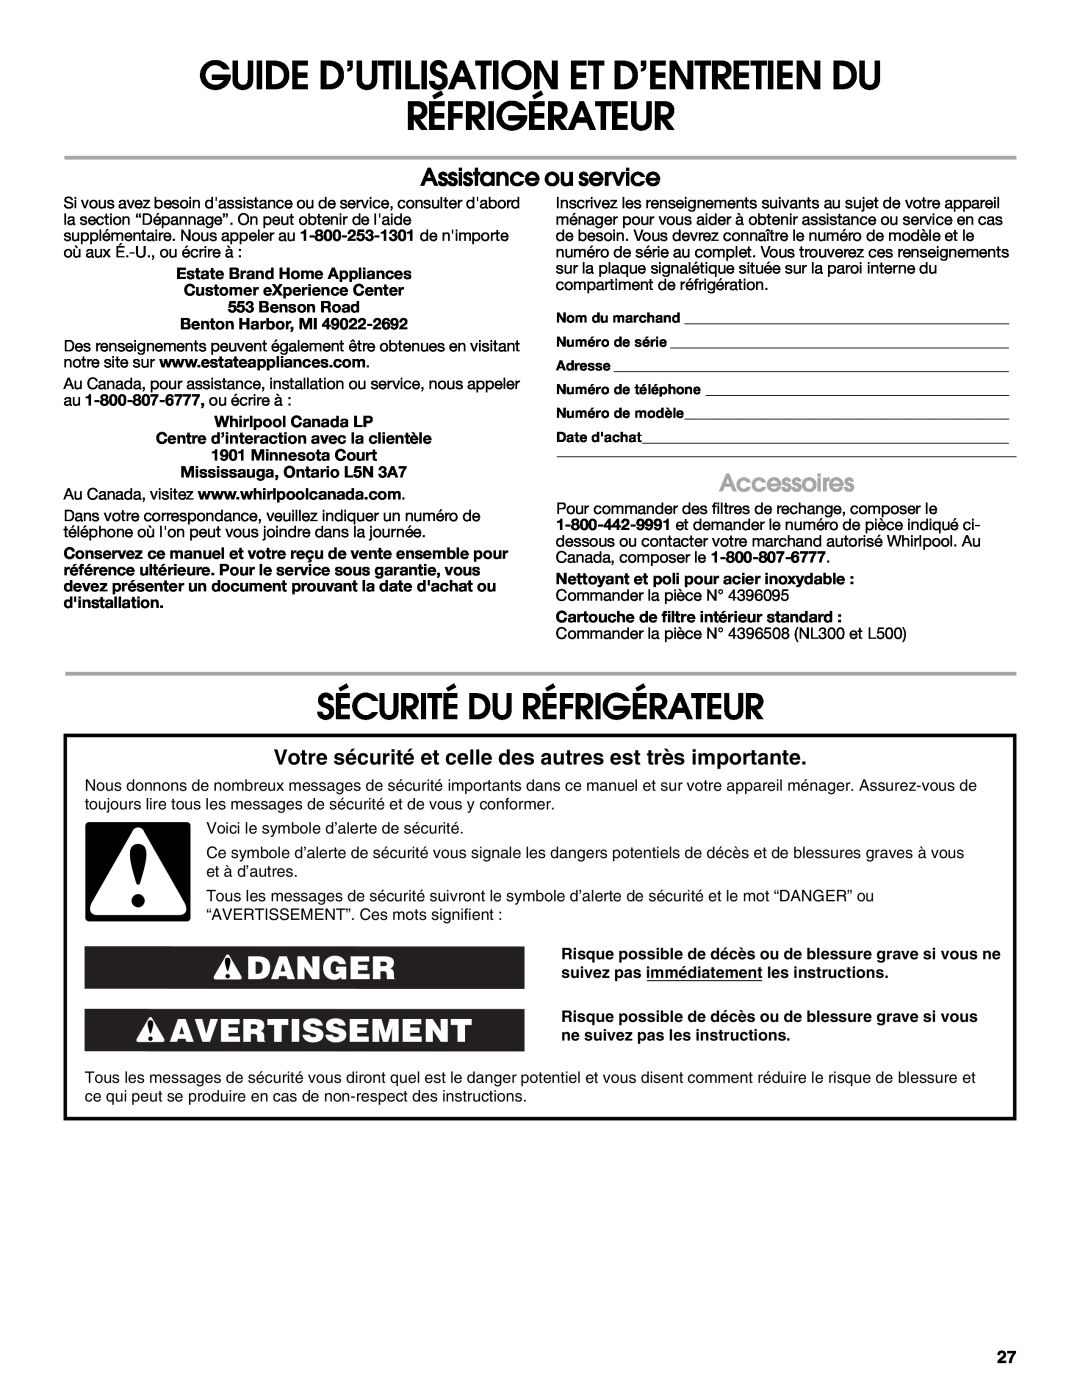 Estate 2318600 warranty Sécurité Du Réfrigérateur, Danger Avertissement, Assistance ou service, Accessoires 